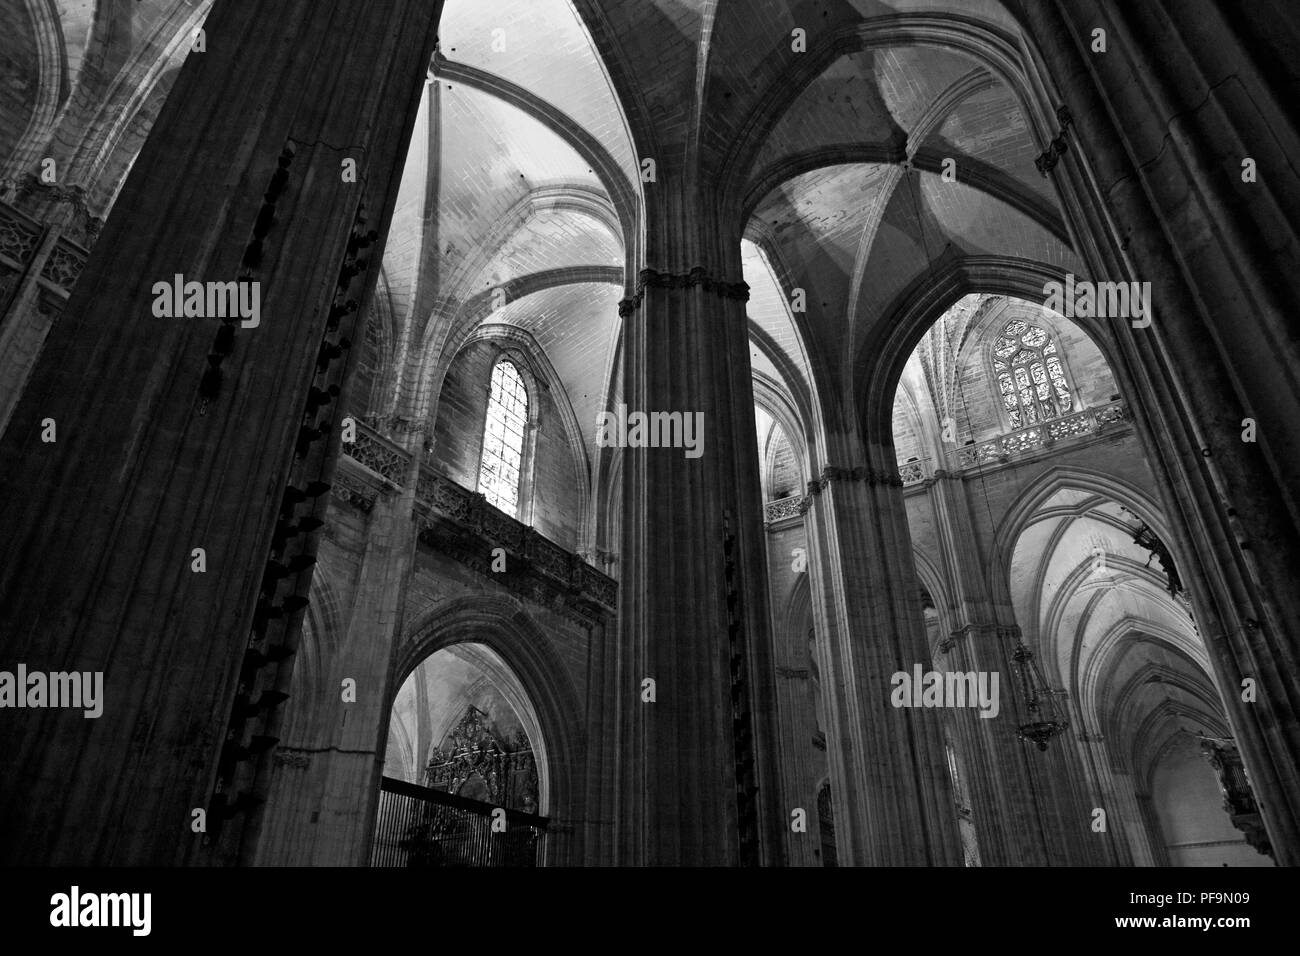 Teil des gewaltigen Kirchenschiff der Catedral de Santa María de la Sede. Sevilla, Spanien: die größte gotische Kirche der Welt. Schwarz und Weiss Stockfoto